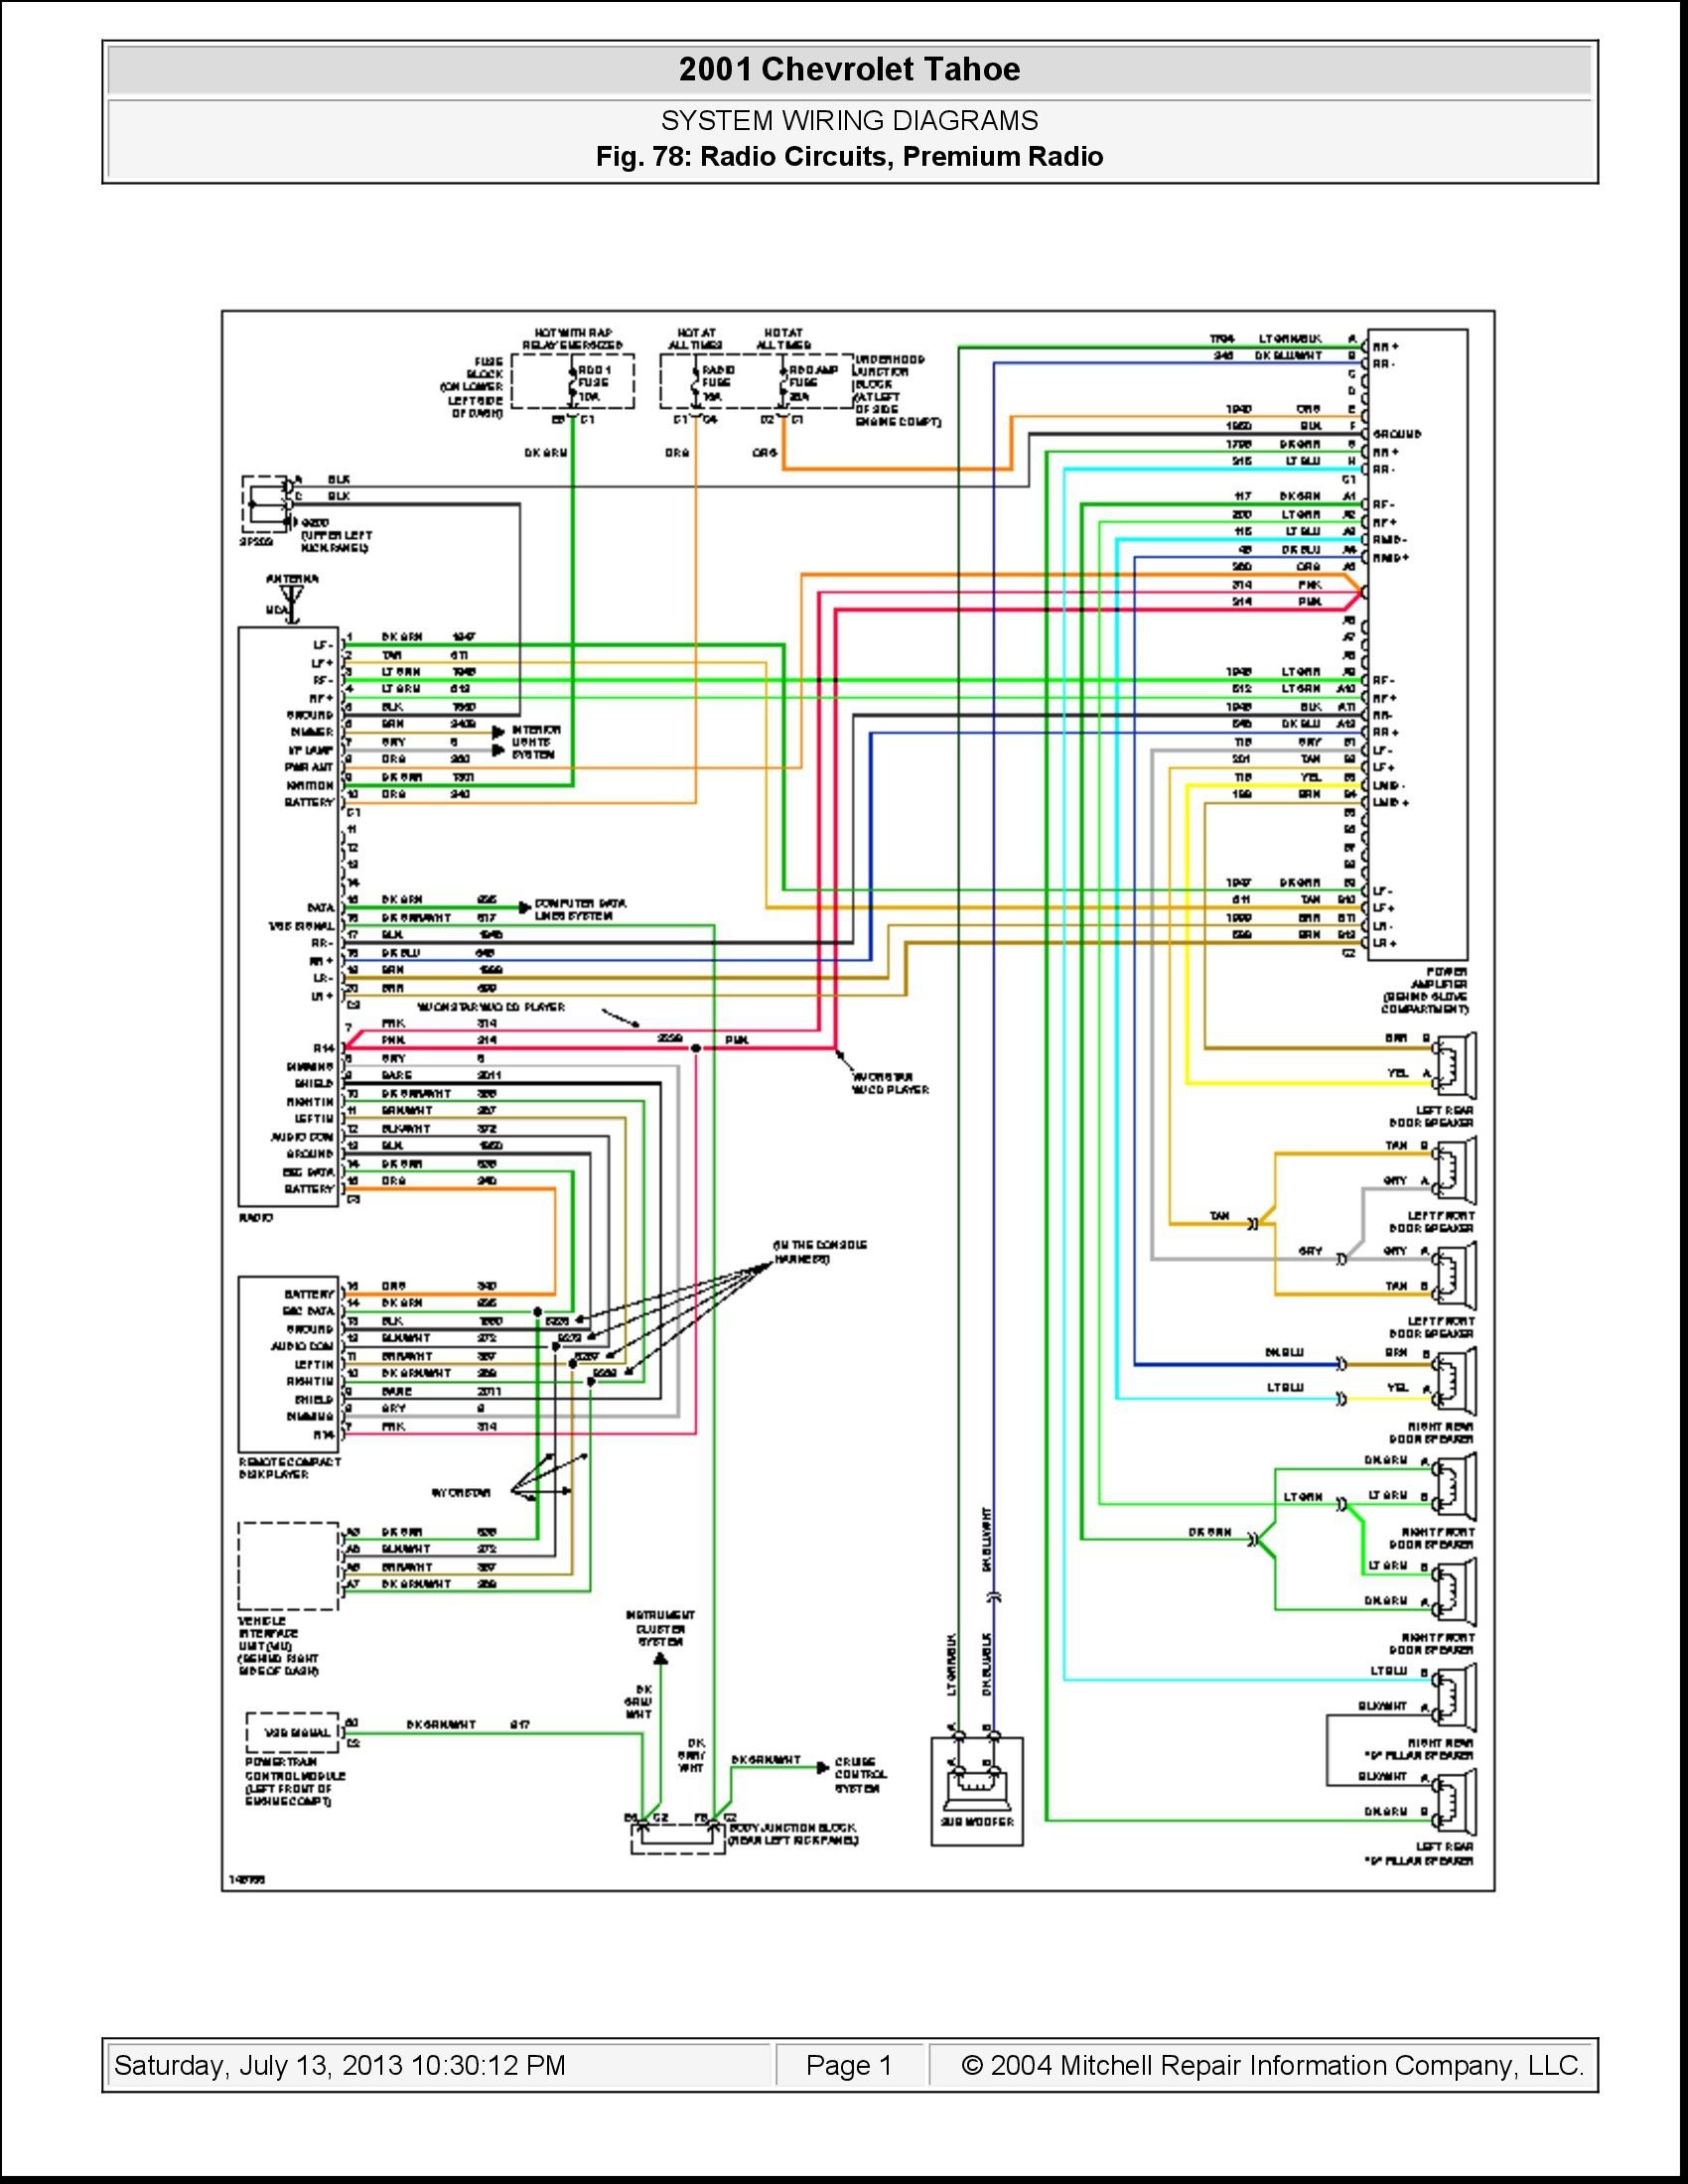 Cb550 Wiring Diagram Uk Fuse Box Explained Auto Electrical Wiring Diagram Of Cb550 Wiring Diagram